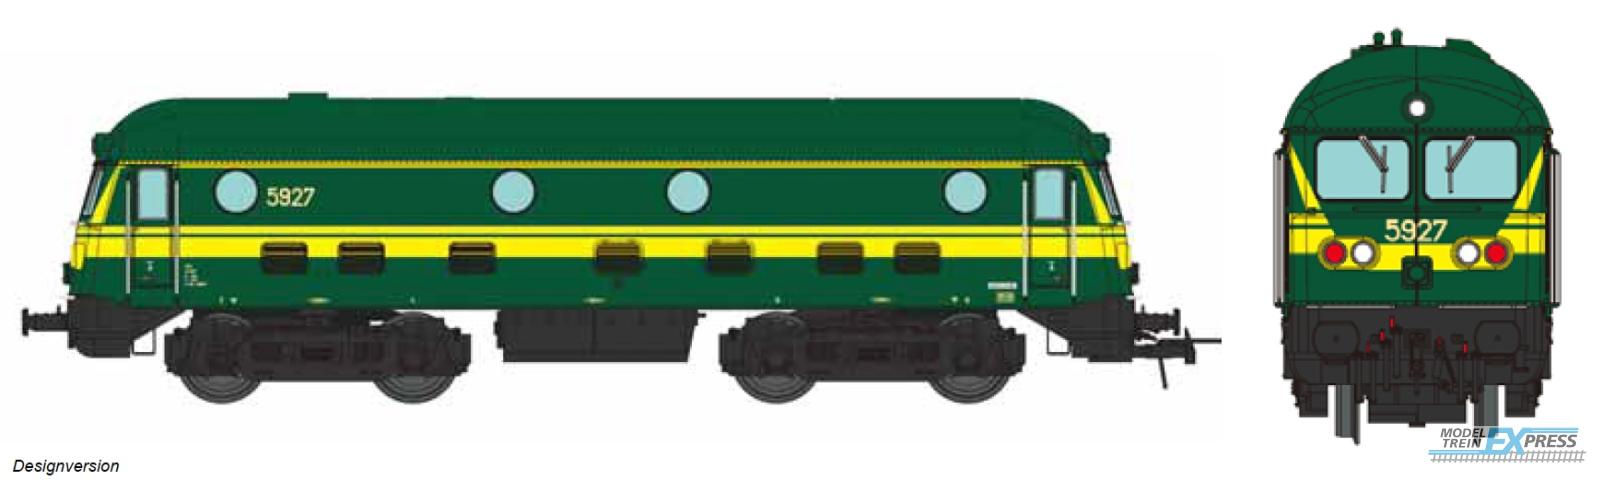 B-Models 9310.05 Diesel 5927, AC. 3-Rail Digital Sound